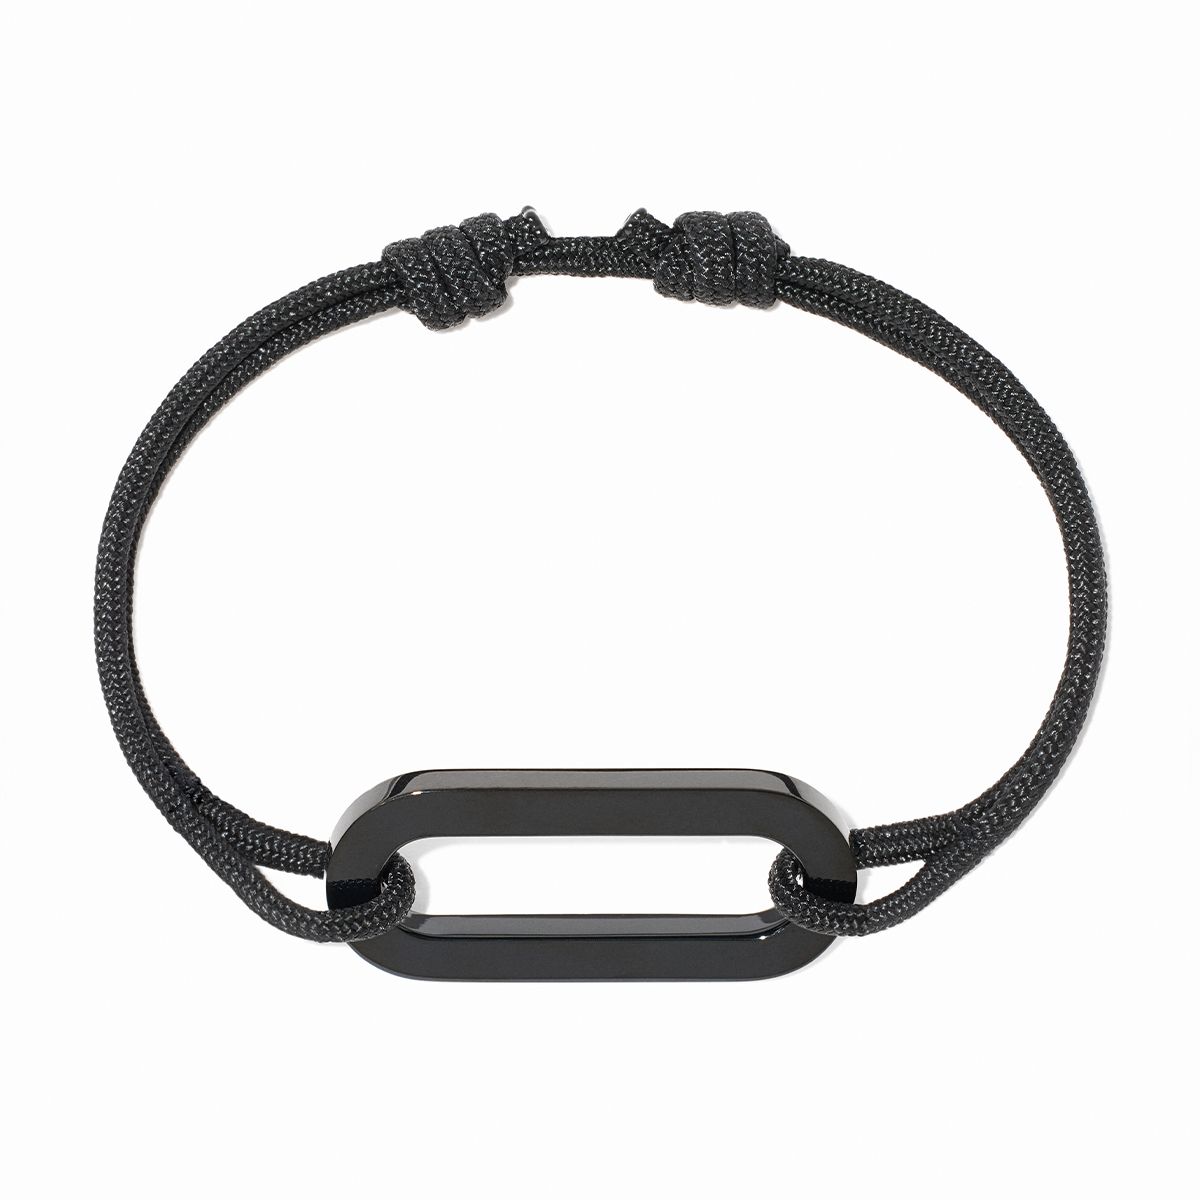 Maillon XL cord bracelet